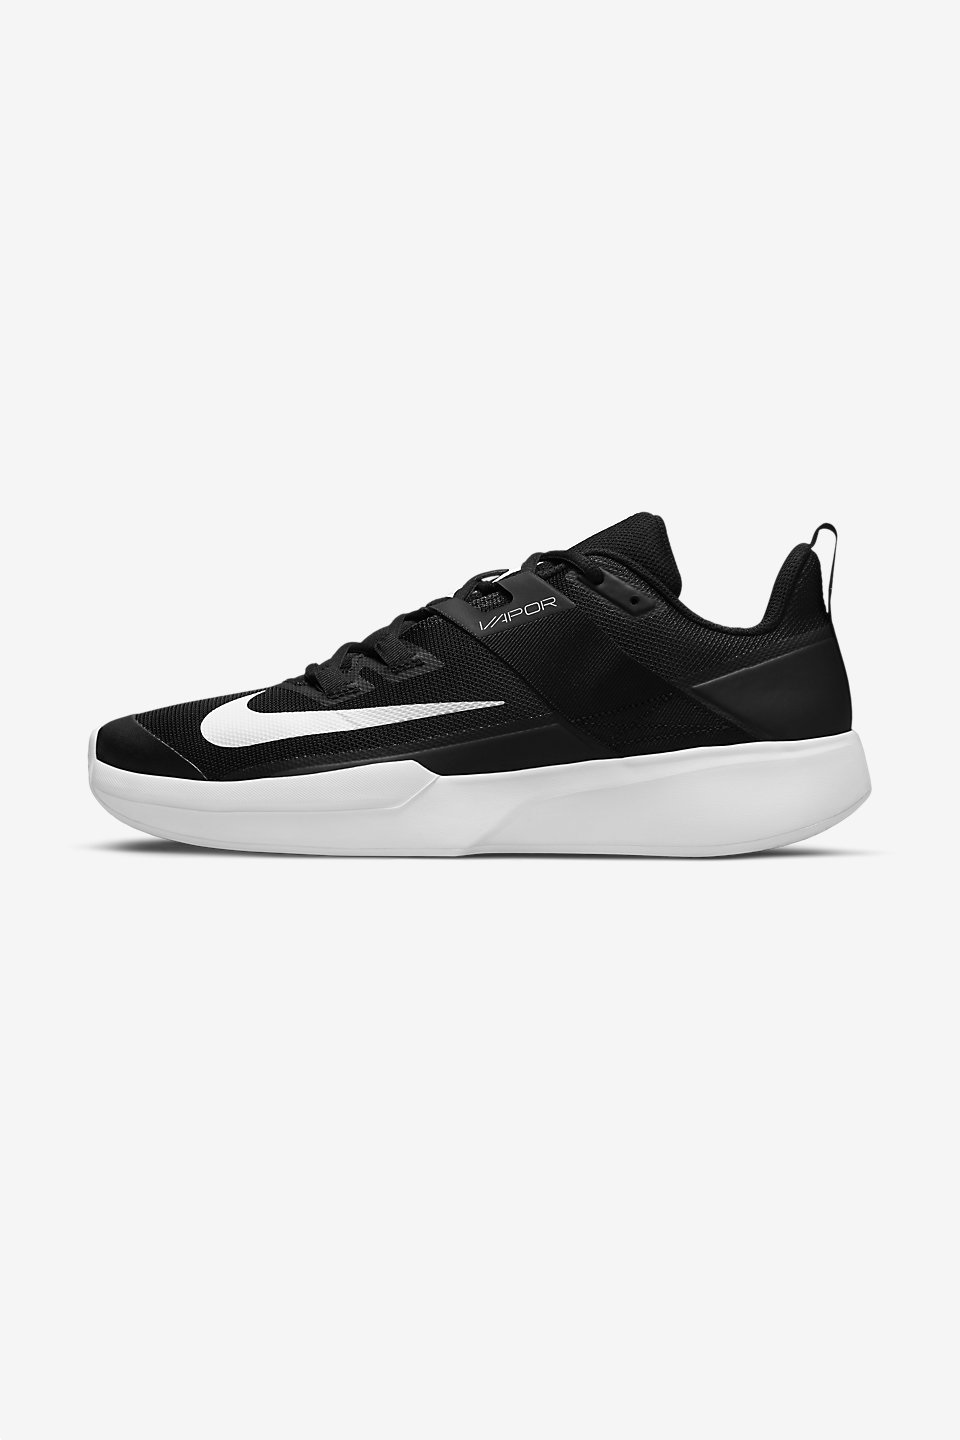 NIKE - Nike Court Vapor Lite Erkek Tenis Ayakkabısı Toprak